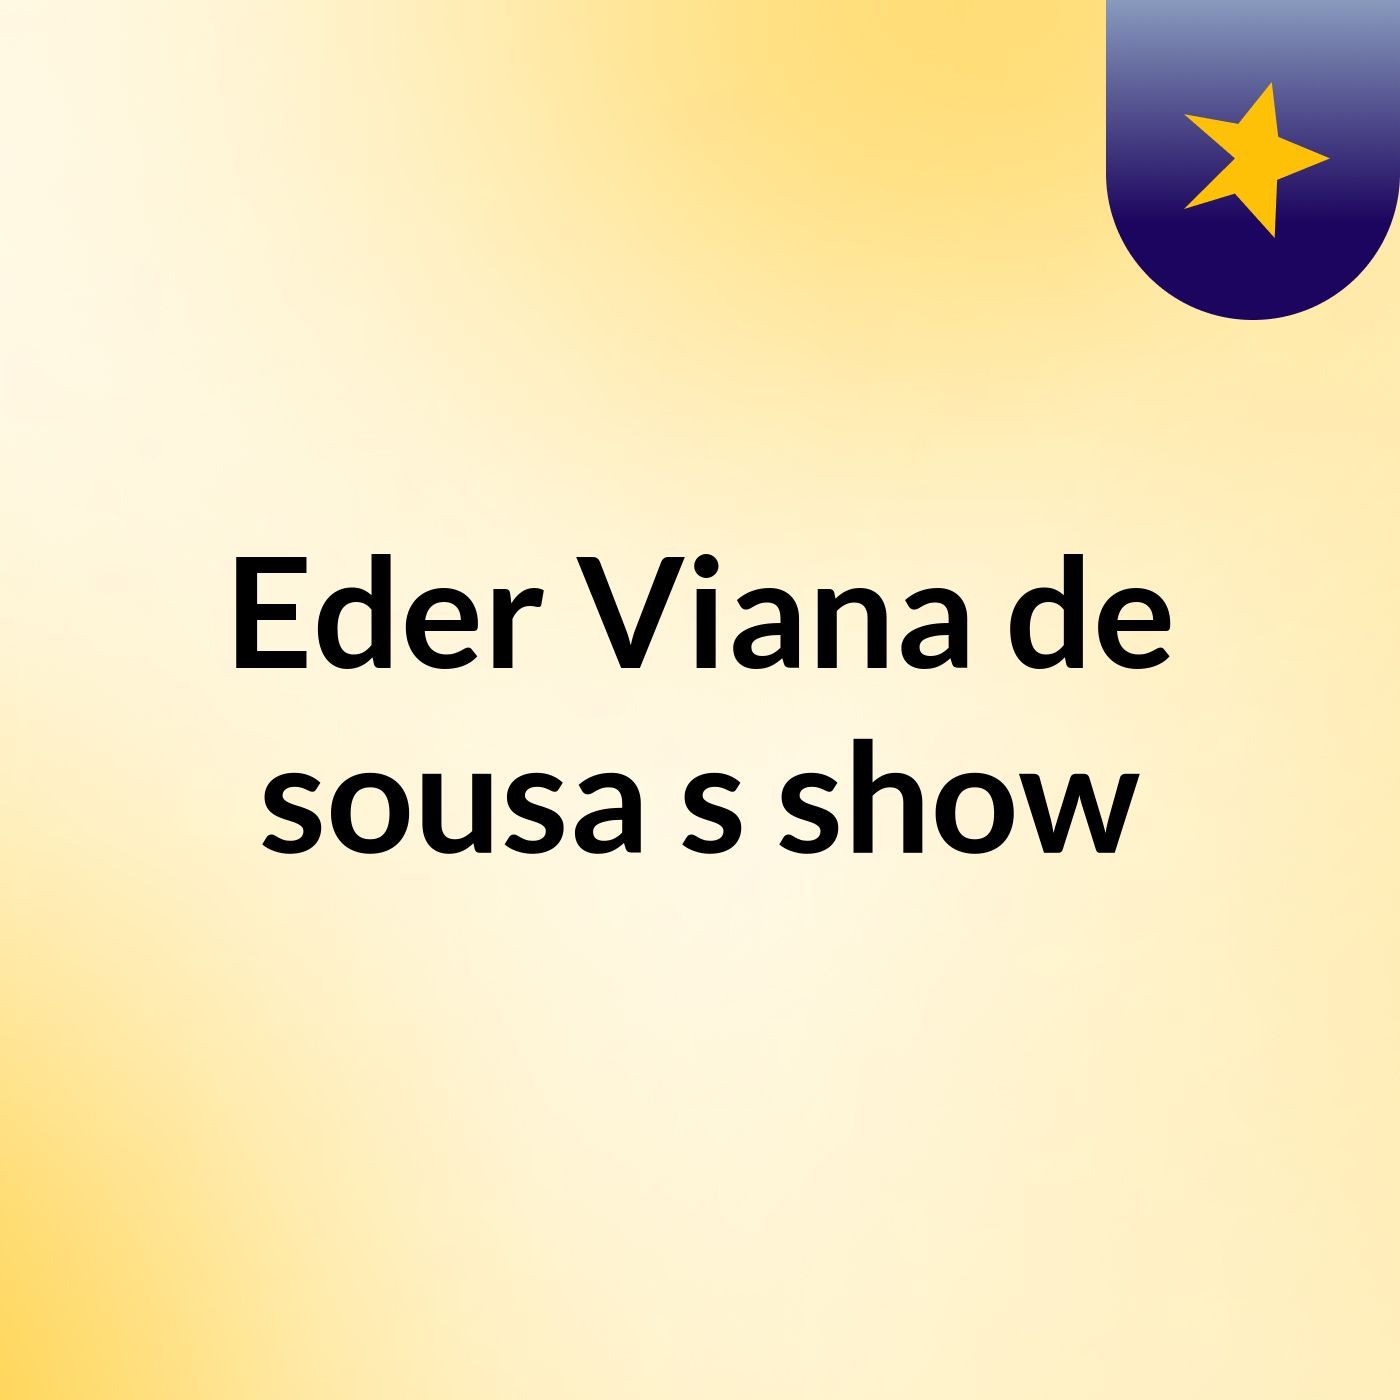 Eder Viana de sousa's show